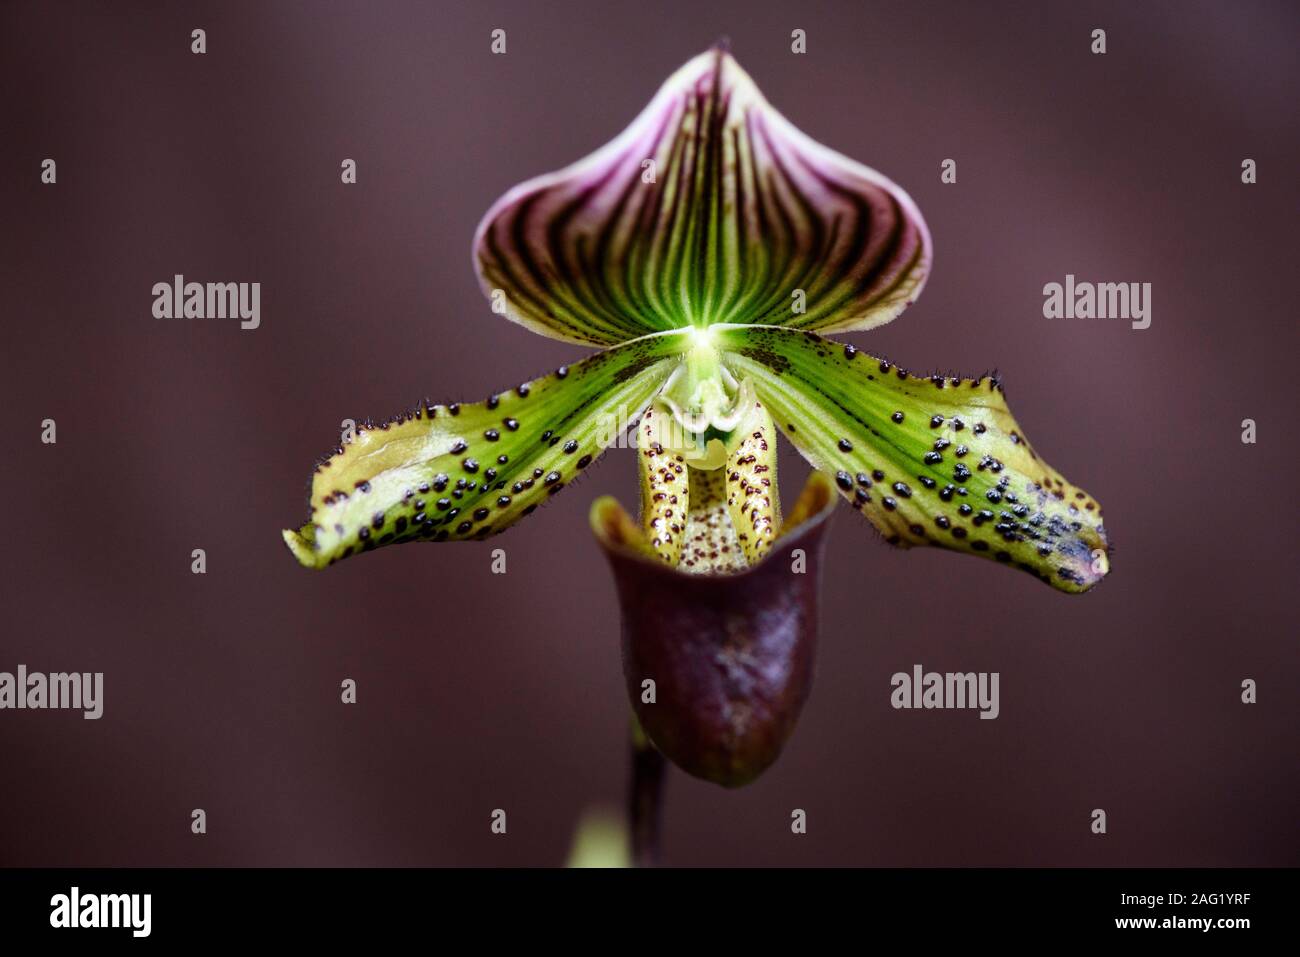 Rare Orchid, Paphiopedilum, Close-up Stock Photo